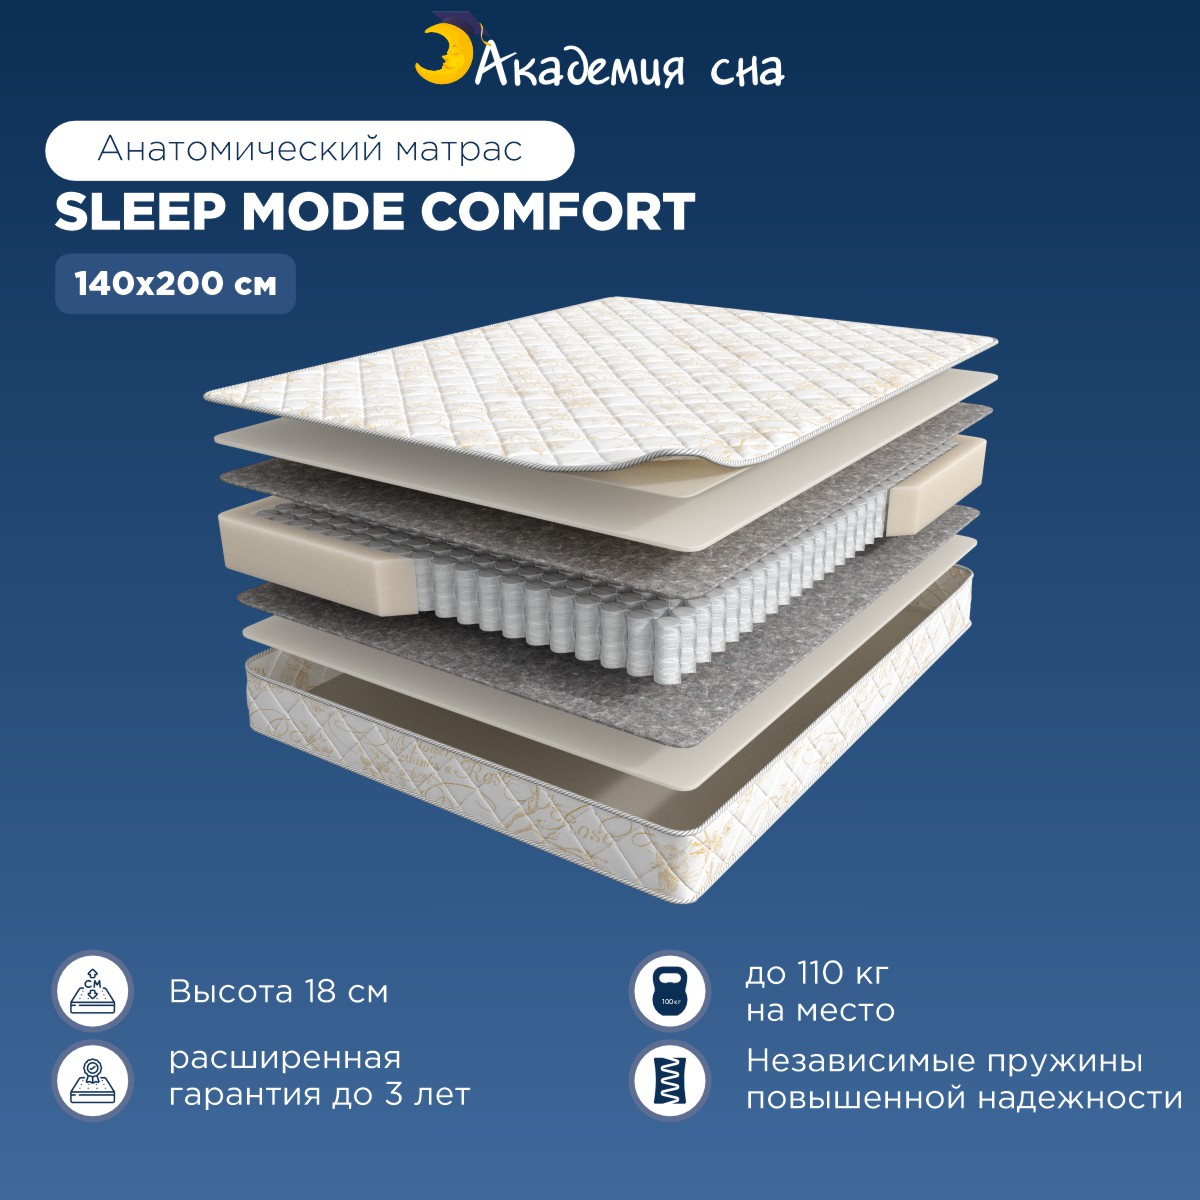 Матрас Академия сна Sleep Mode Comfort 140x200 - купить в Москве, цены на Мегамаркет